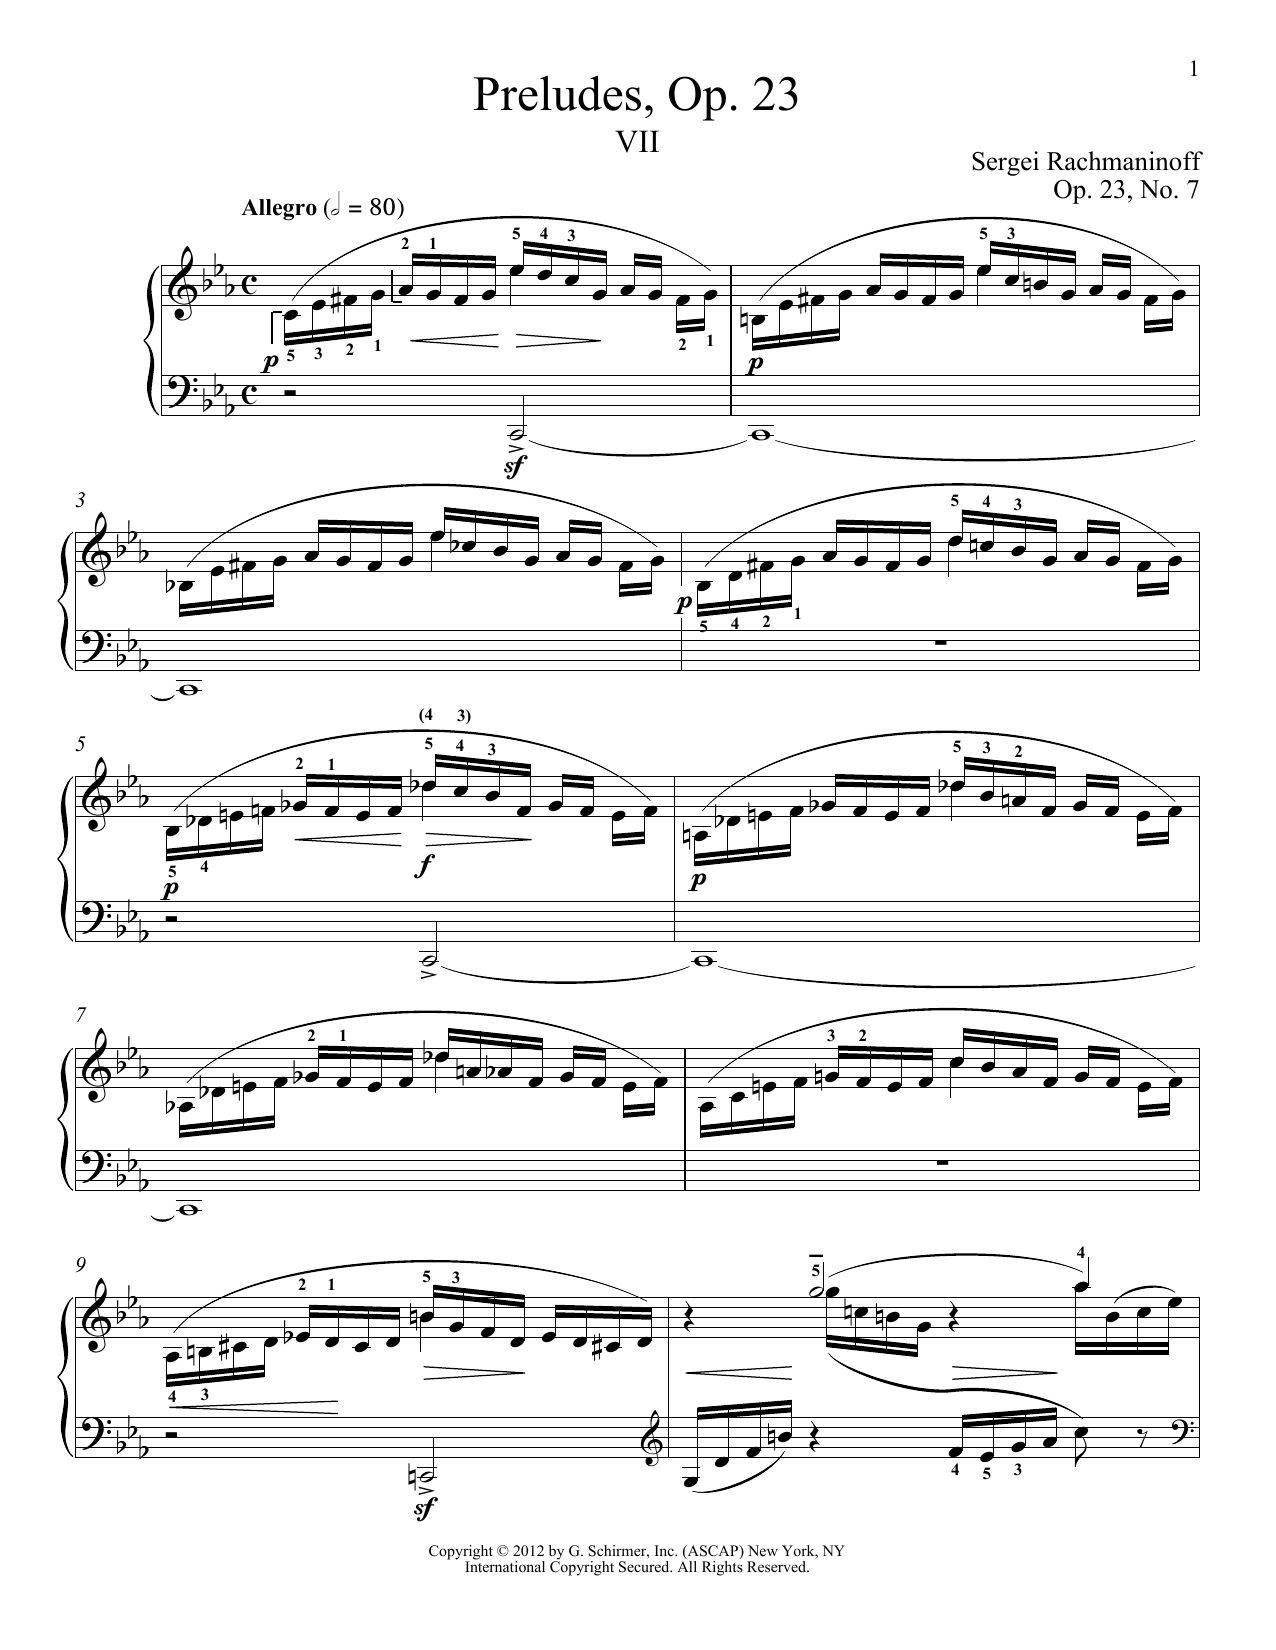 Download Sergei Rachmaninoff Prelude In C Minor, Op. 23, No. 7 Sheet Music